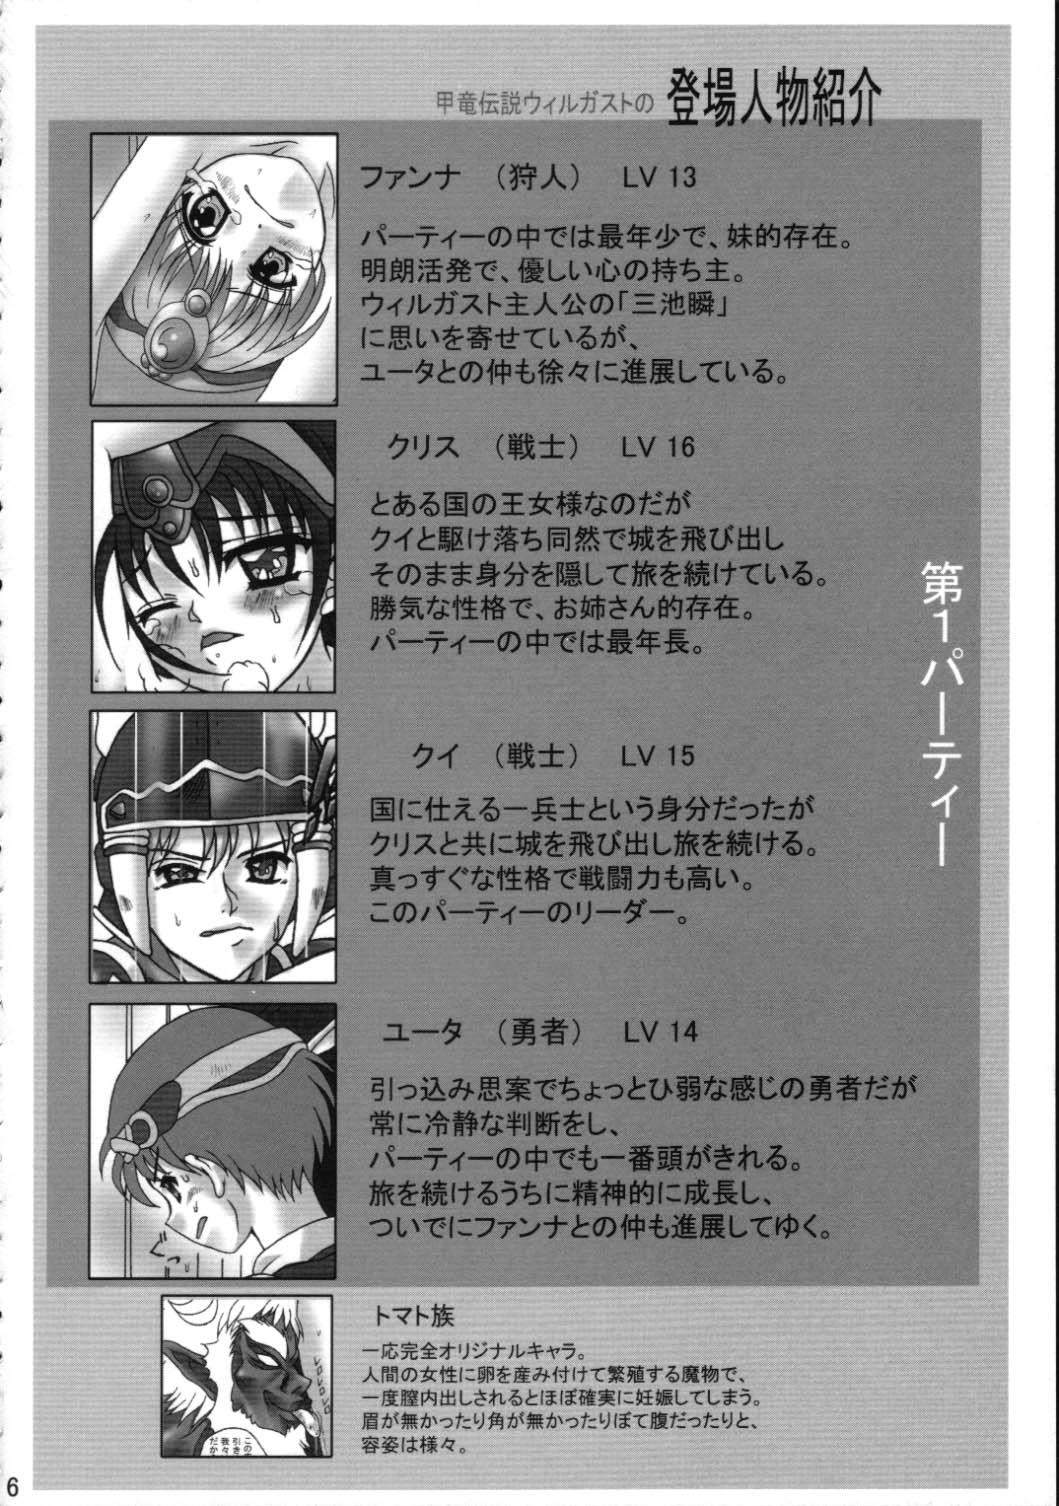 Fellatio Toraware no Shoujo - Kouryuu densetsu villgust Butt Fuck - Page 5